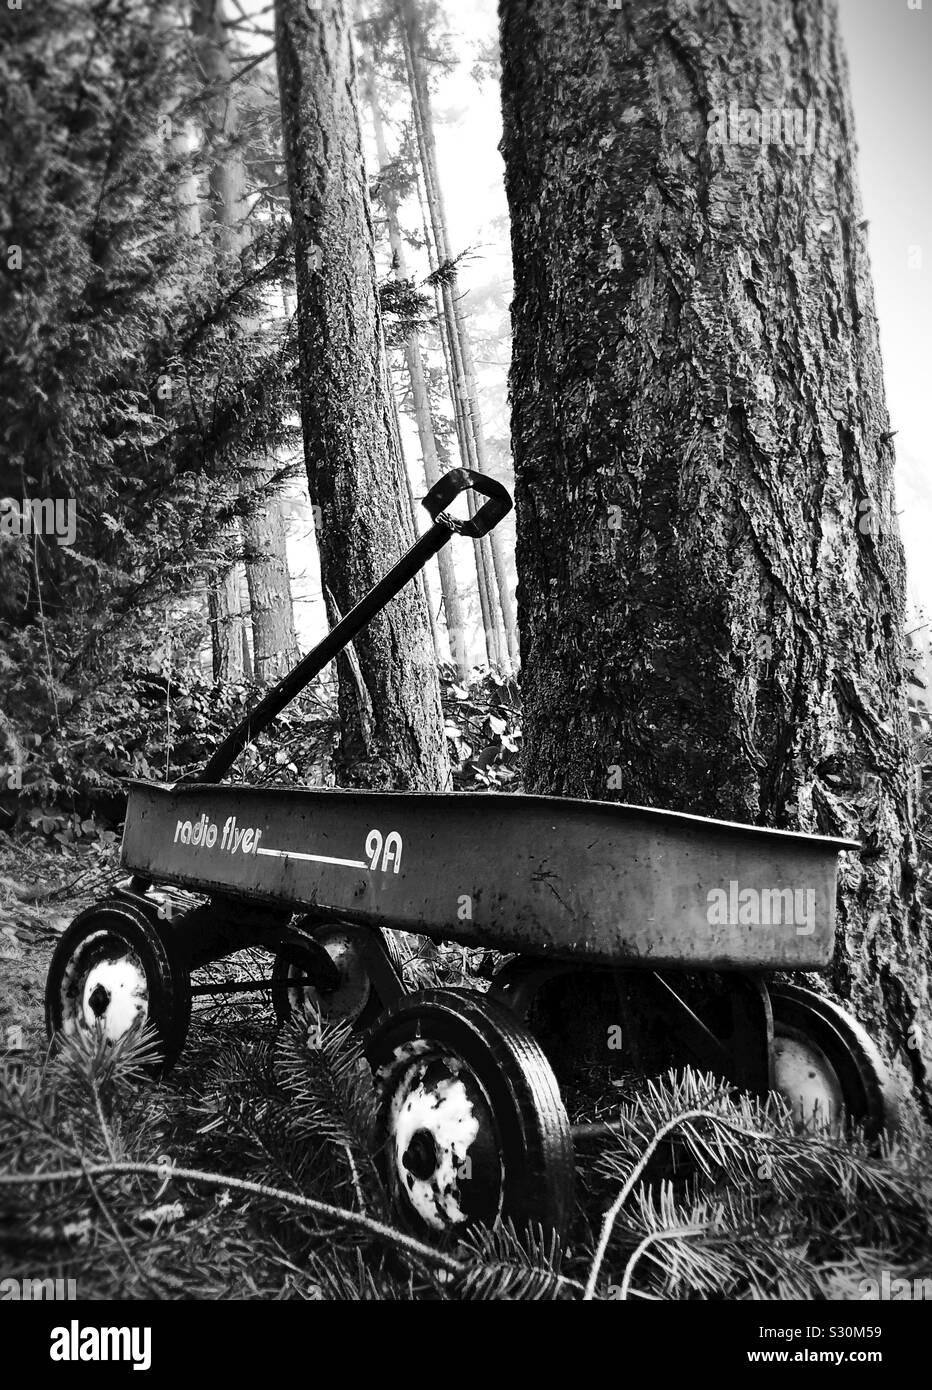 Una vecchia radio flyer wagon accanto a un albero in una foresta. Foto Stock